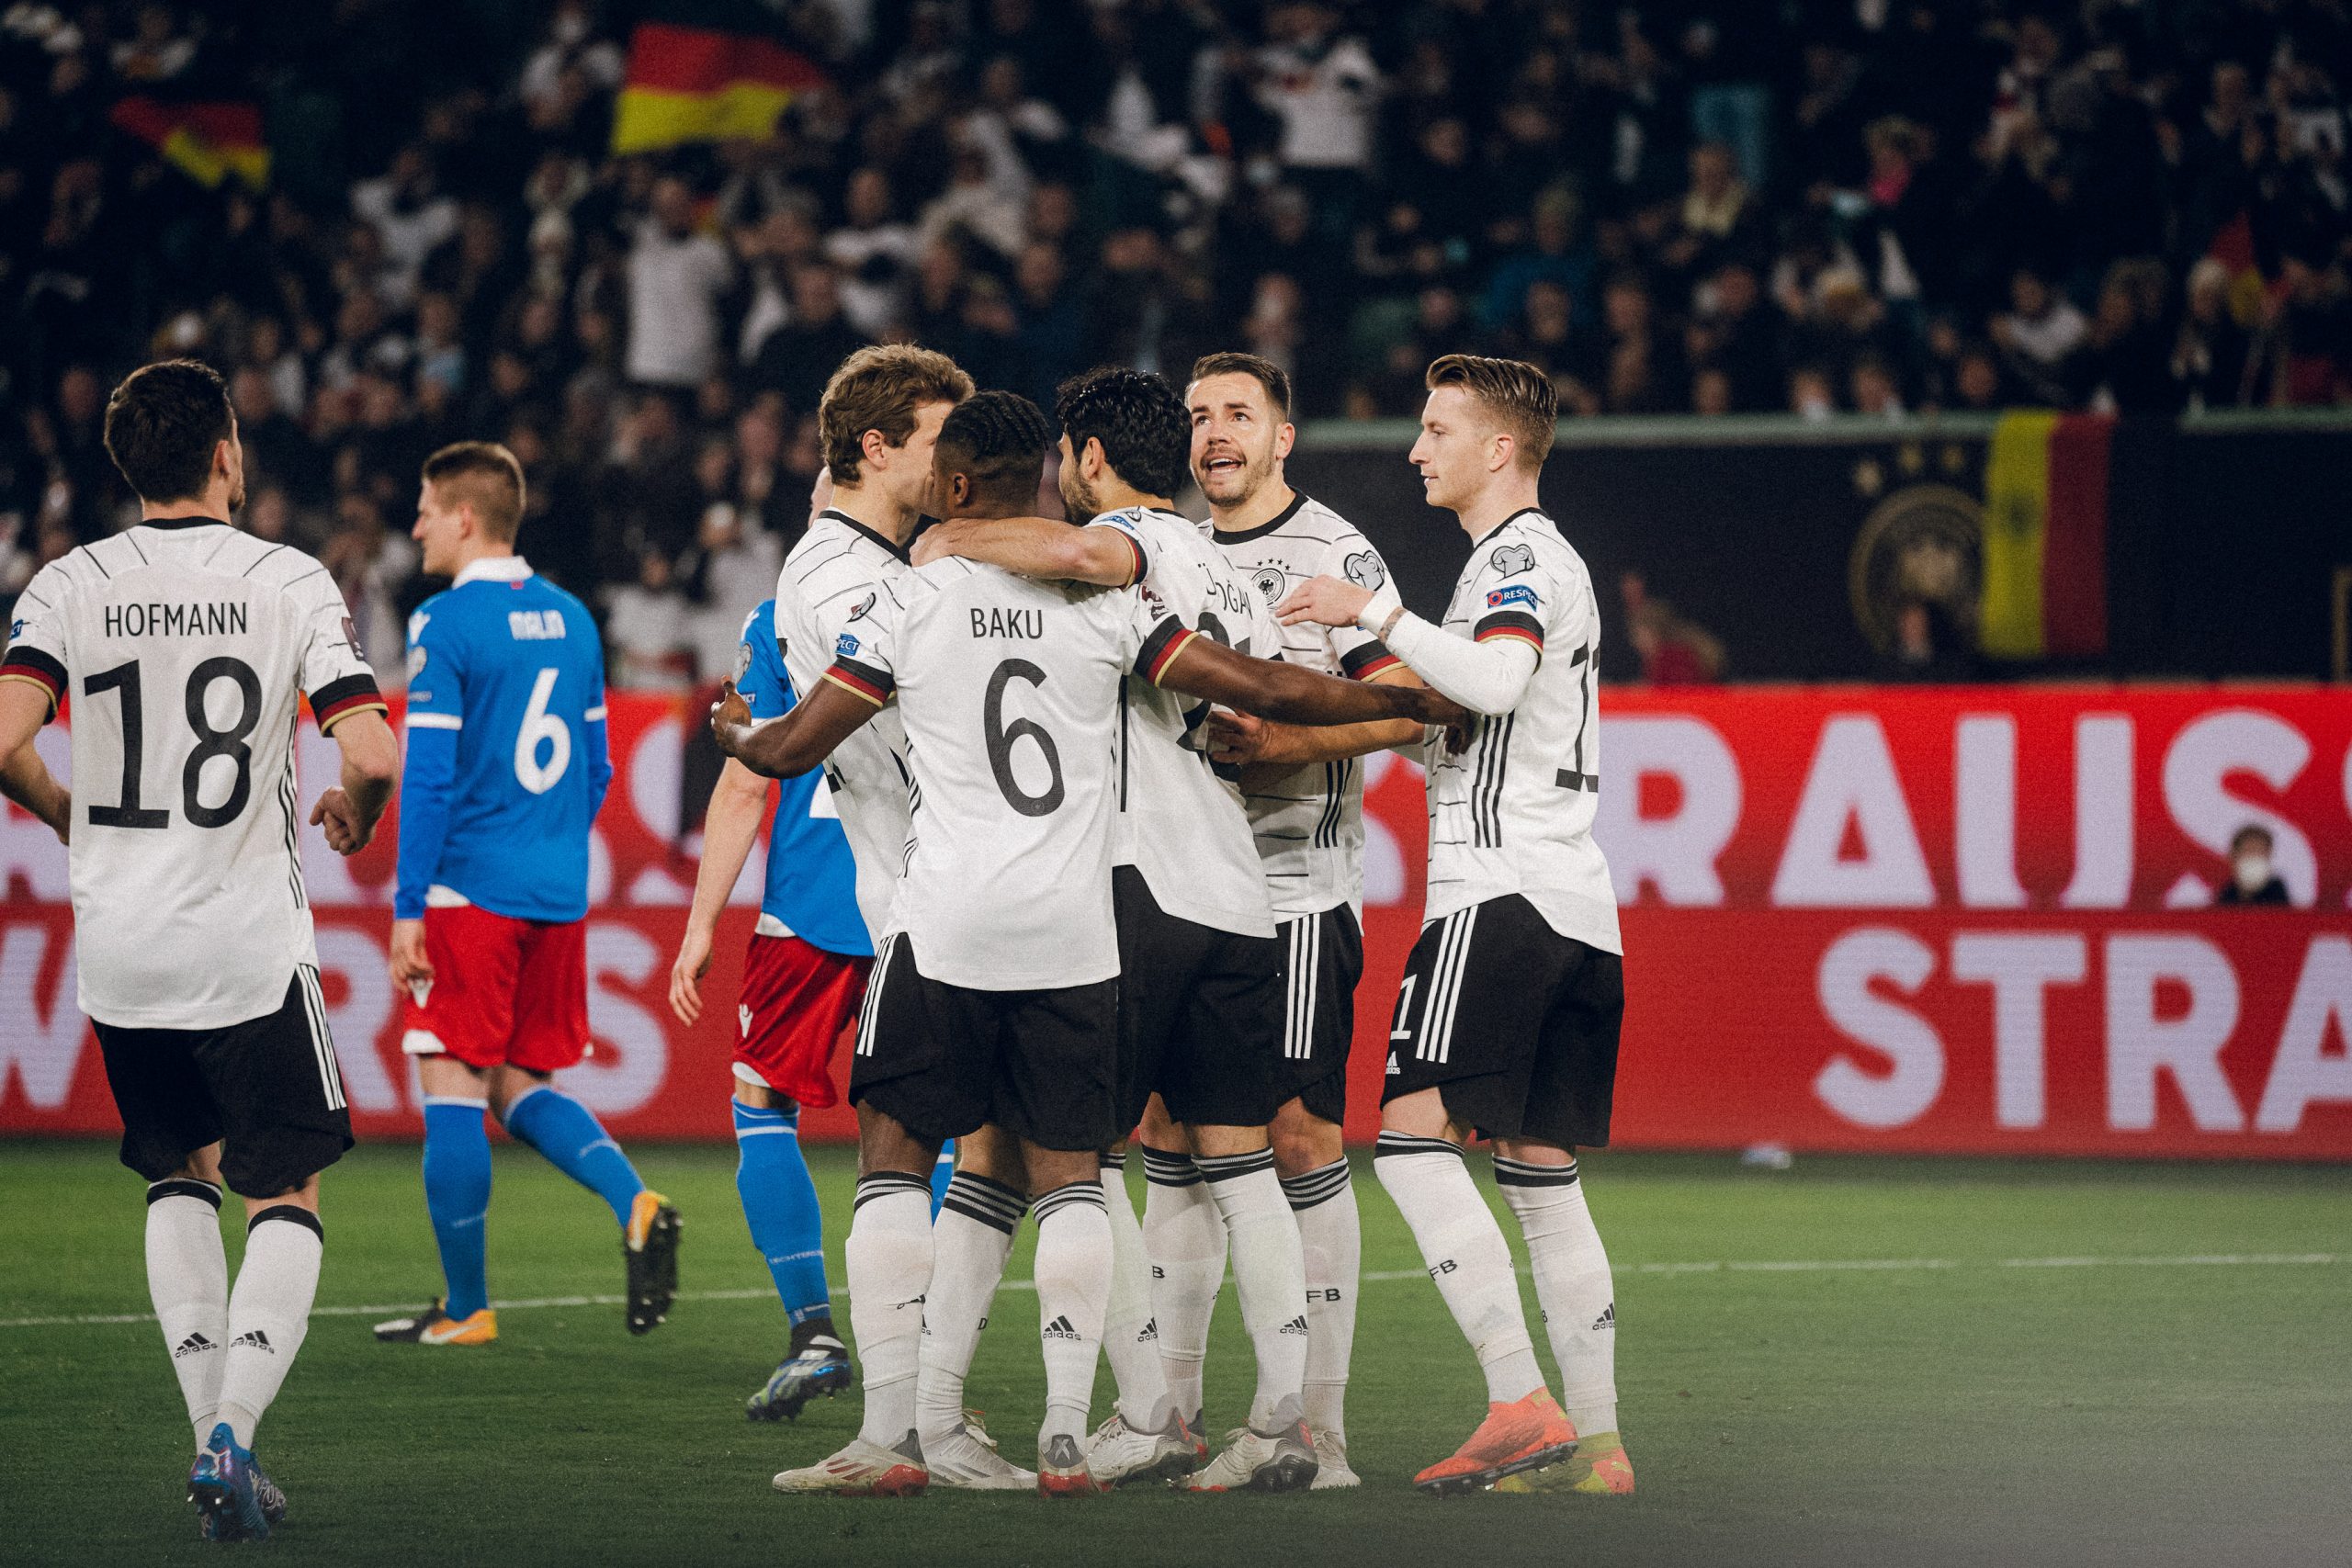 احتفال نجوم منتخب ألمانيا بعد تسجيله هدف في شباك ليختنشتاين watanserb.com